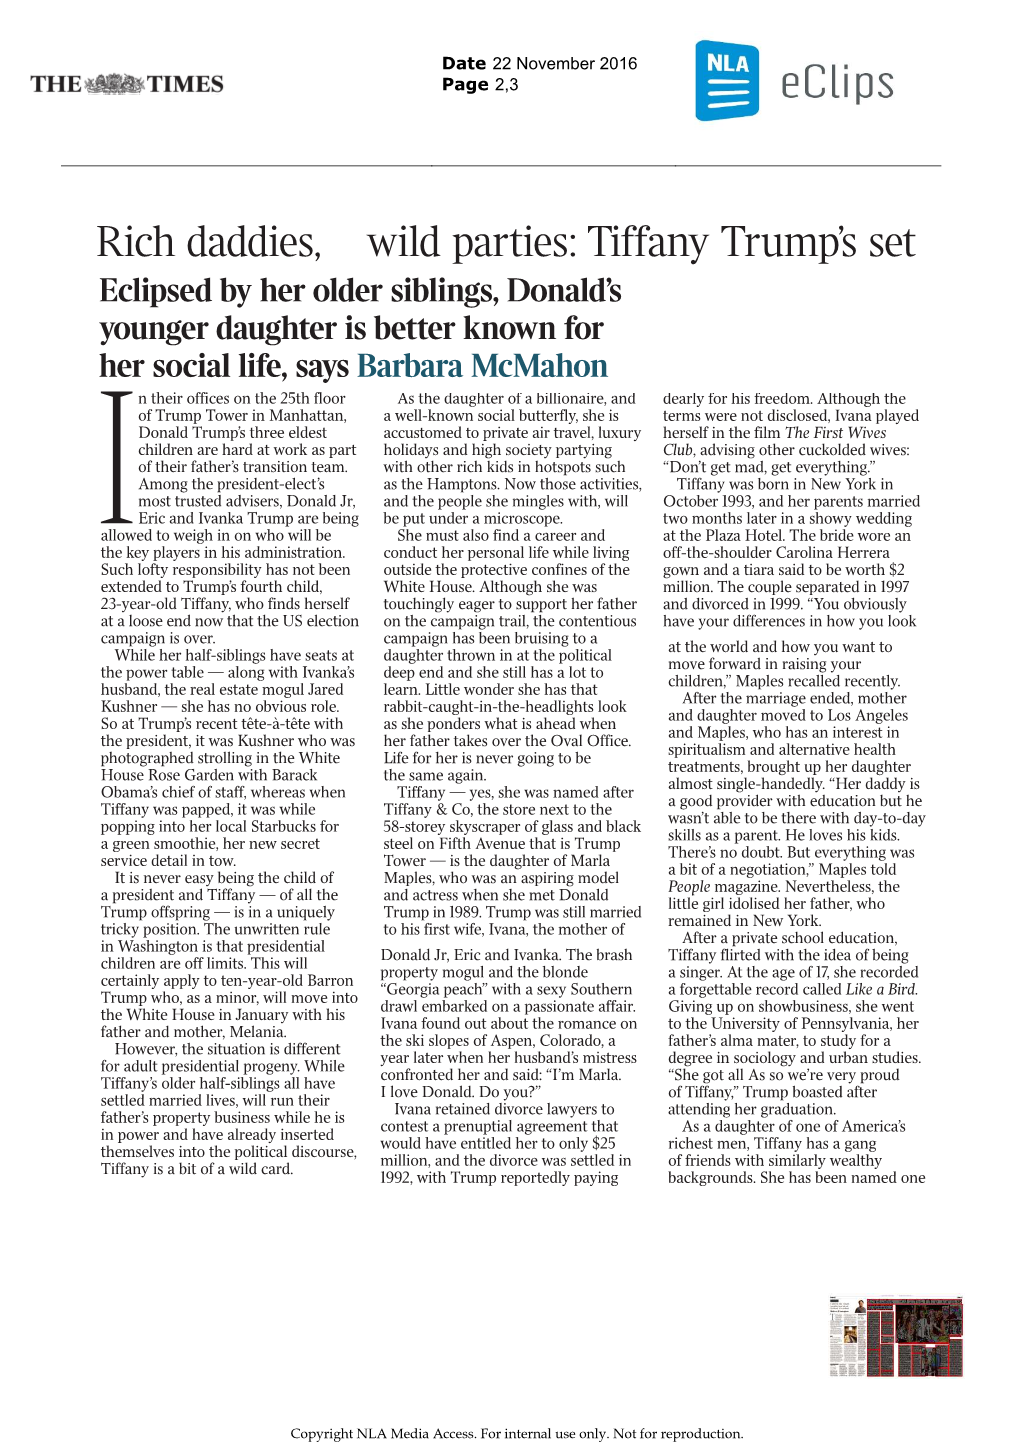 Rich Daddies, Wild Parties: Tiffany Trump's